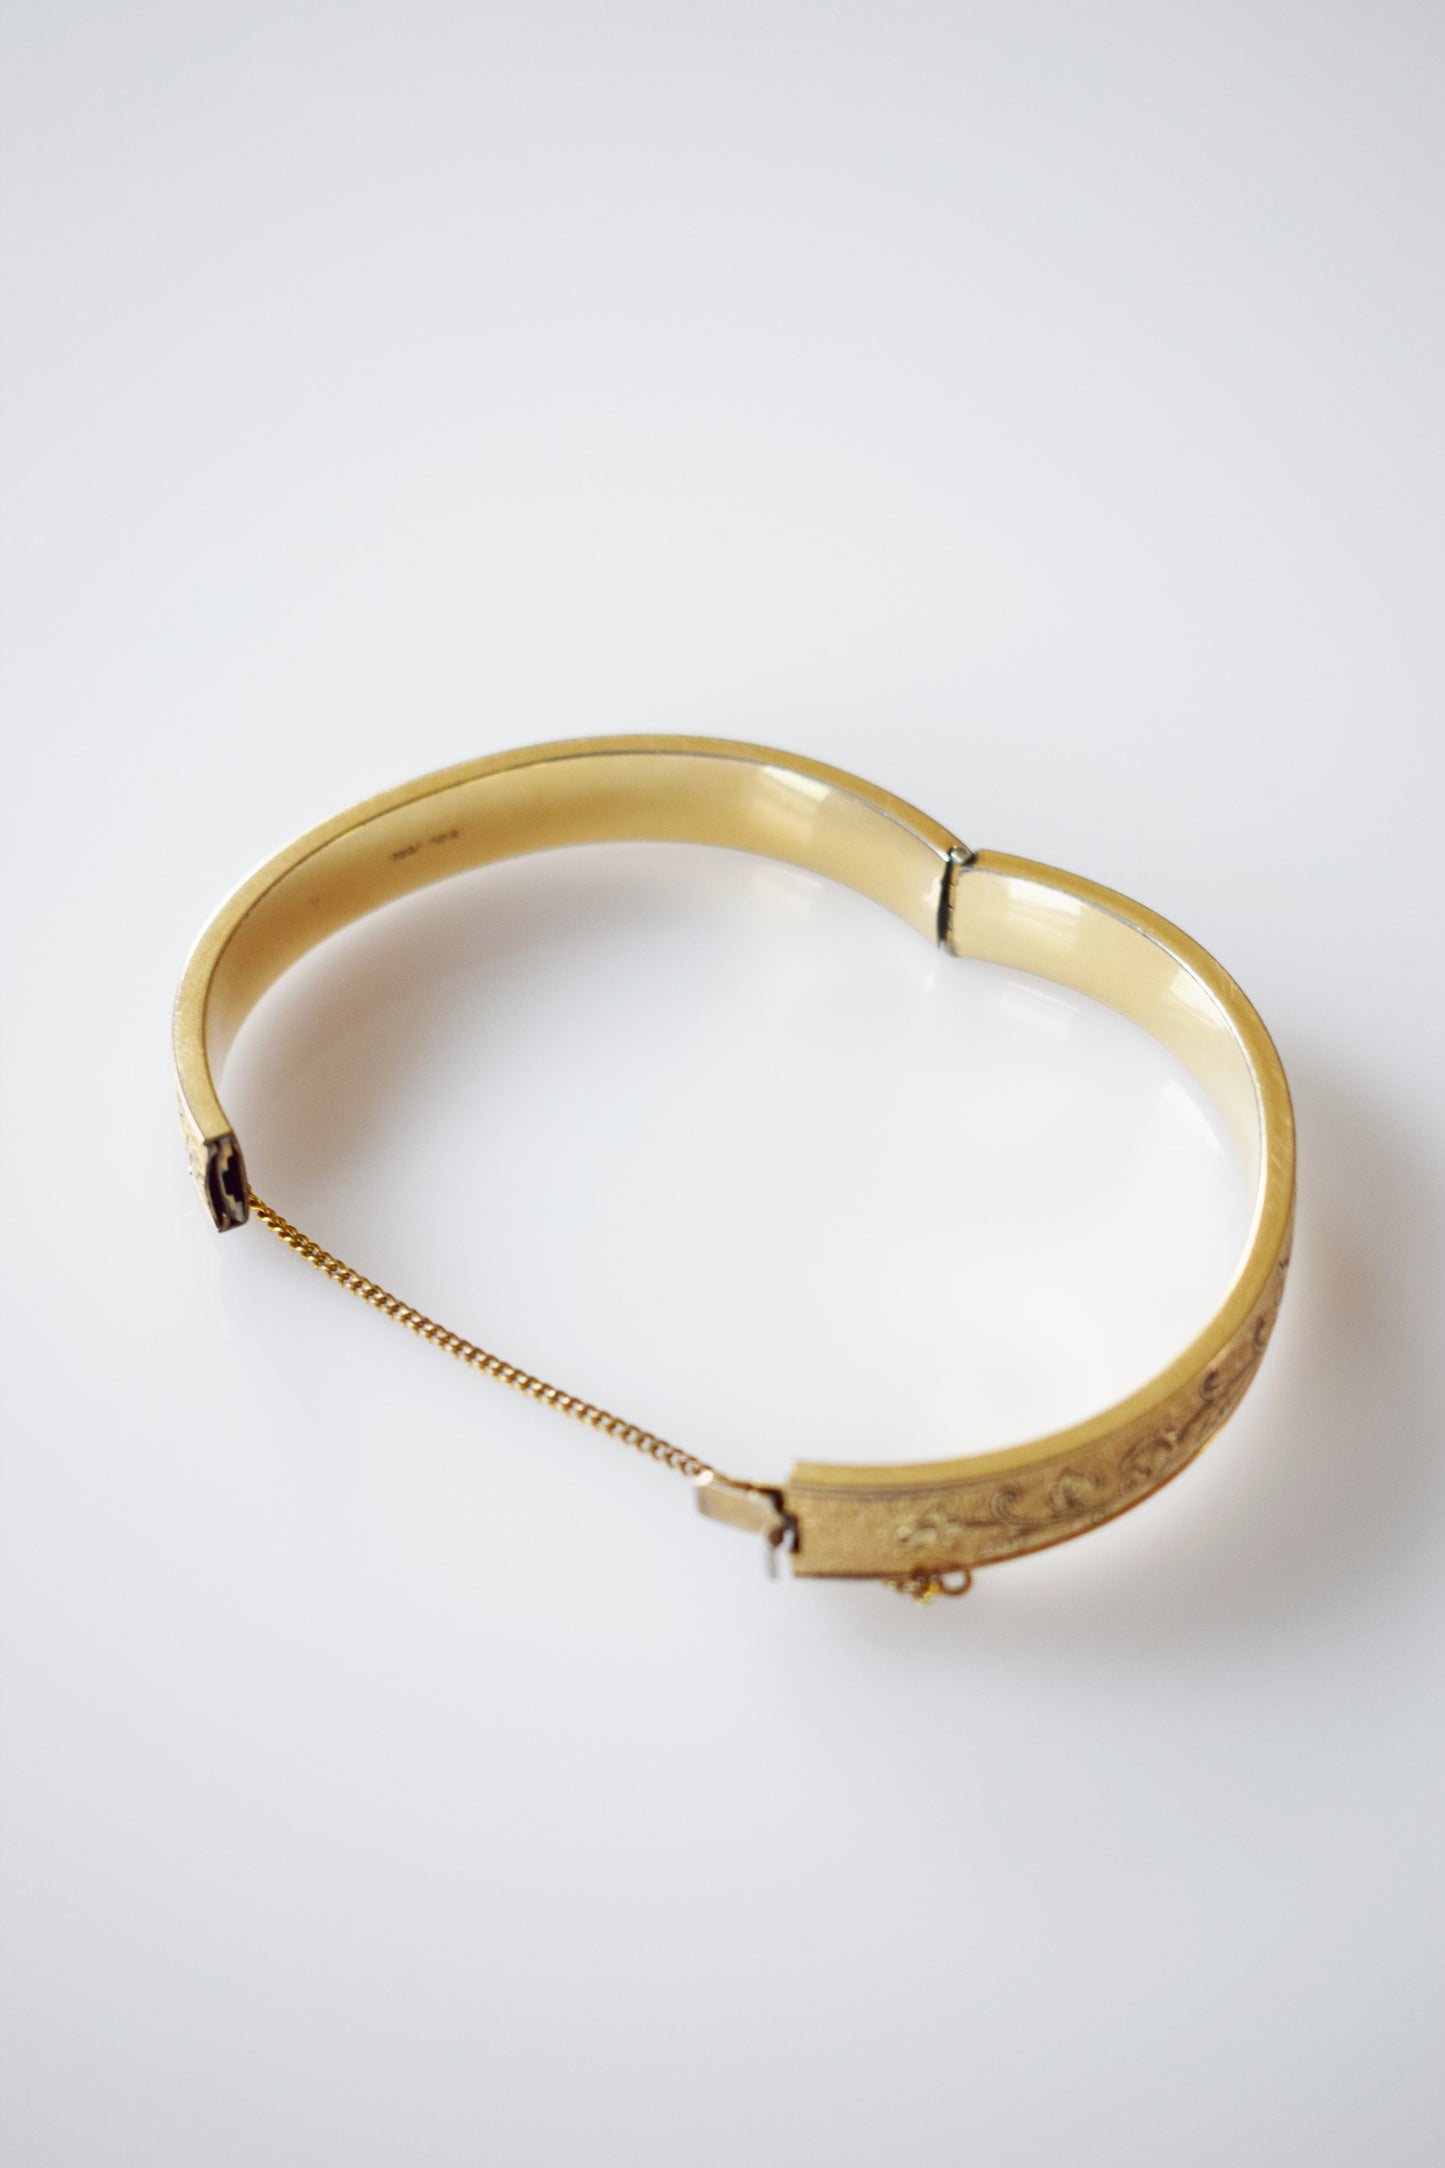 Antique Etched Bangle Bracelet | Enameled Rose Motif